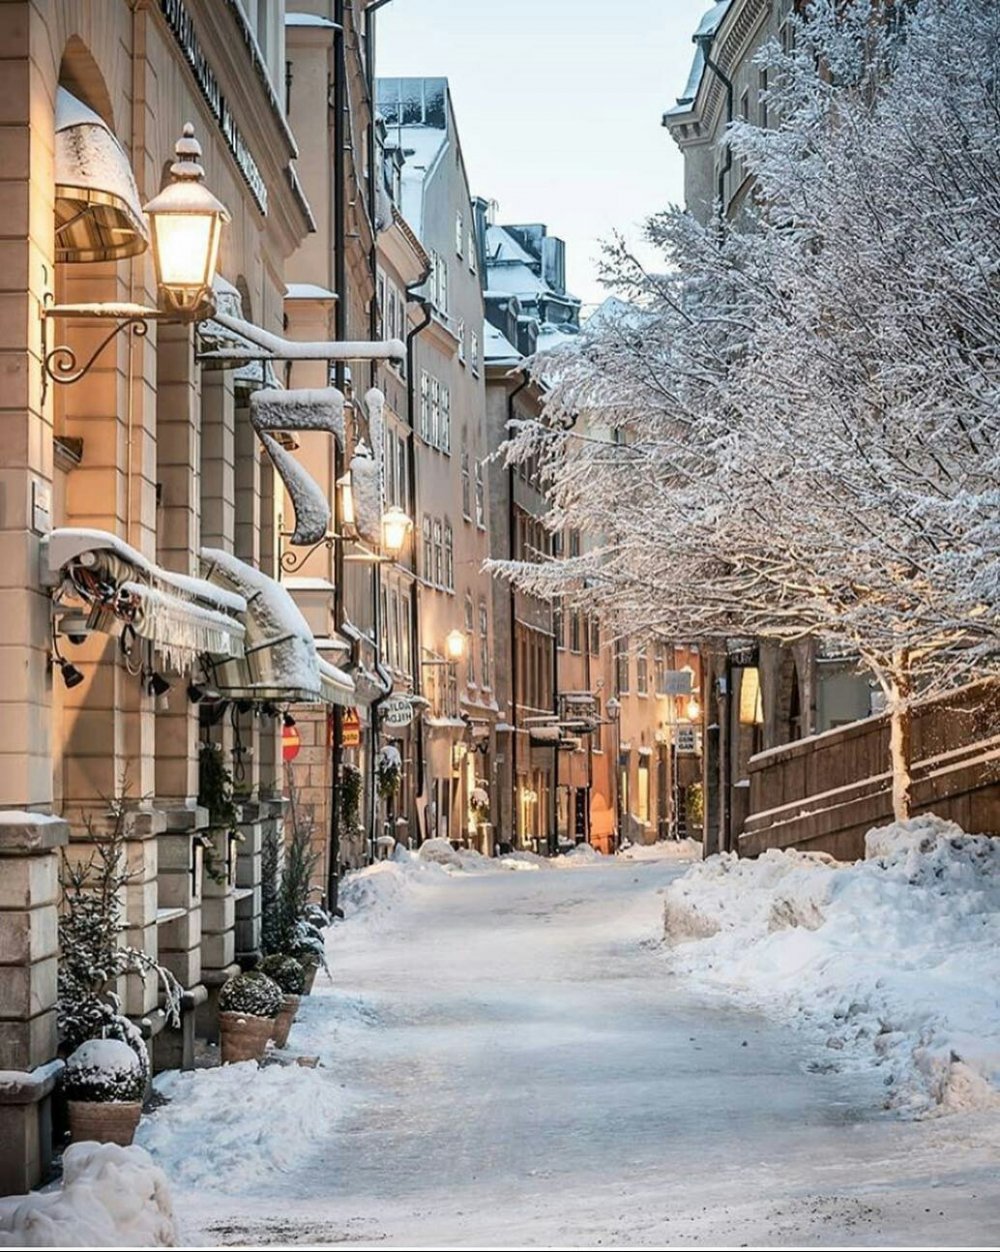 Хельсинки зима